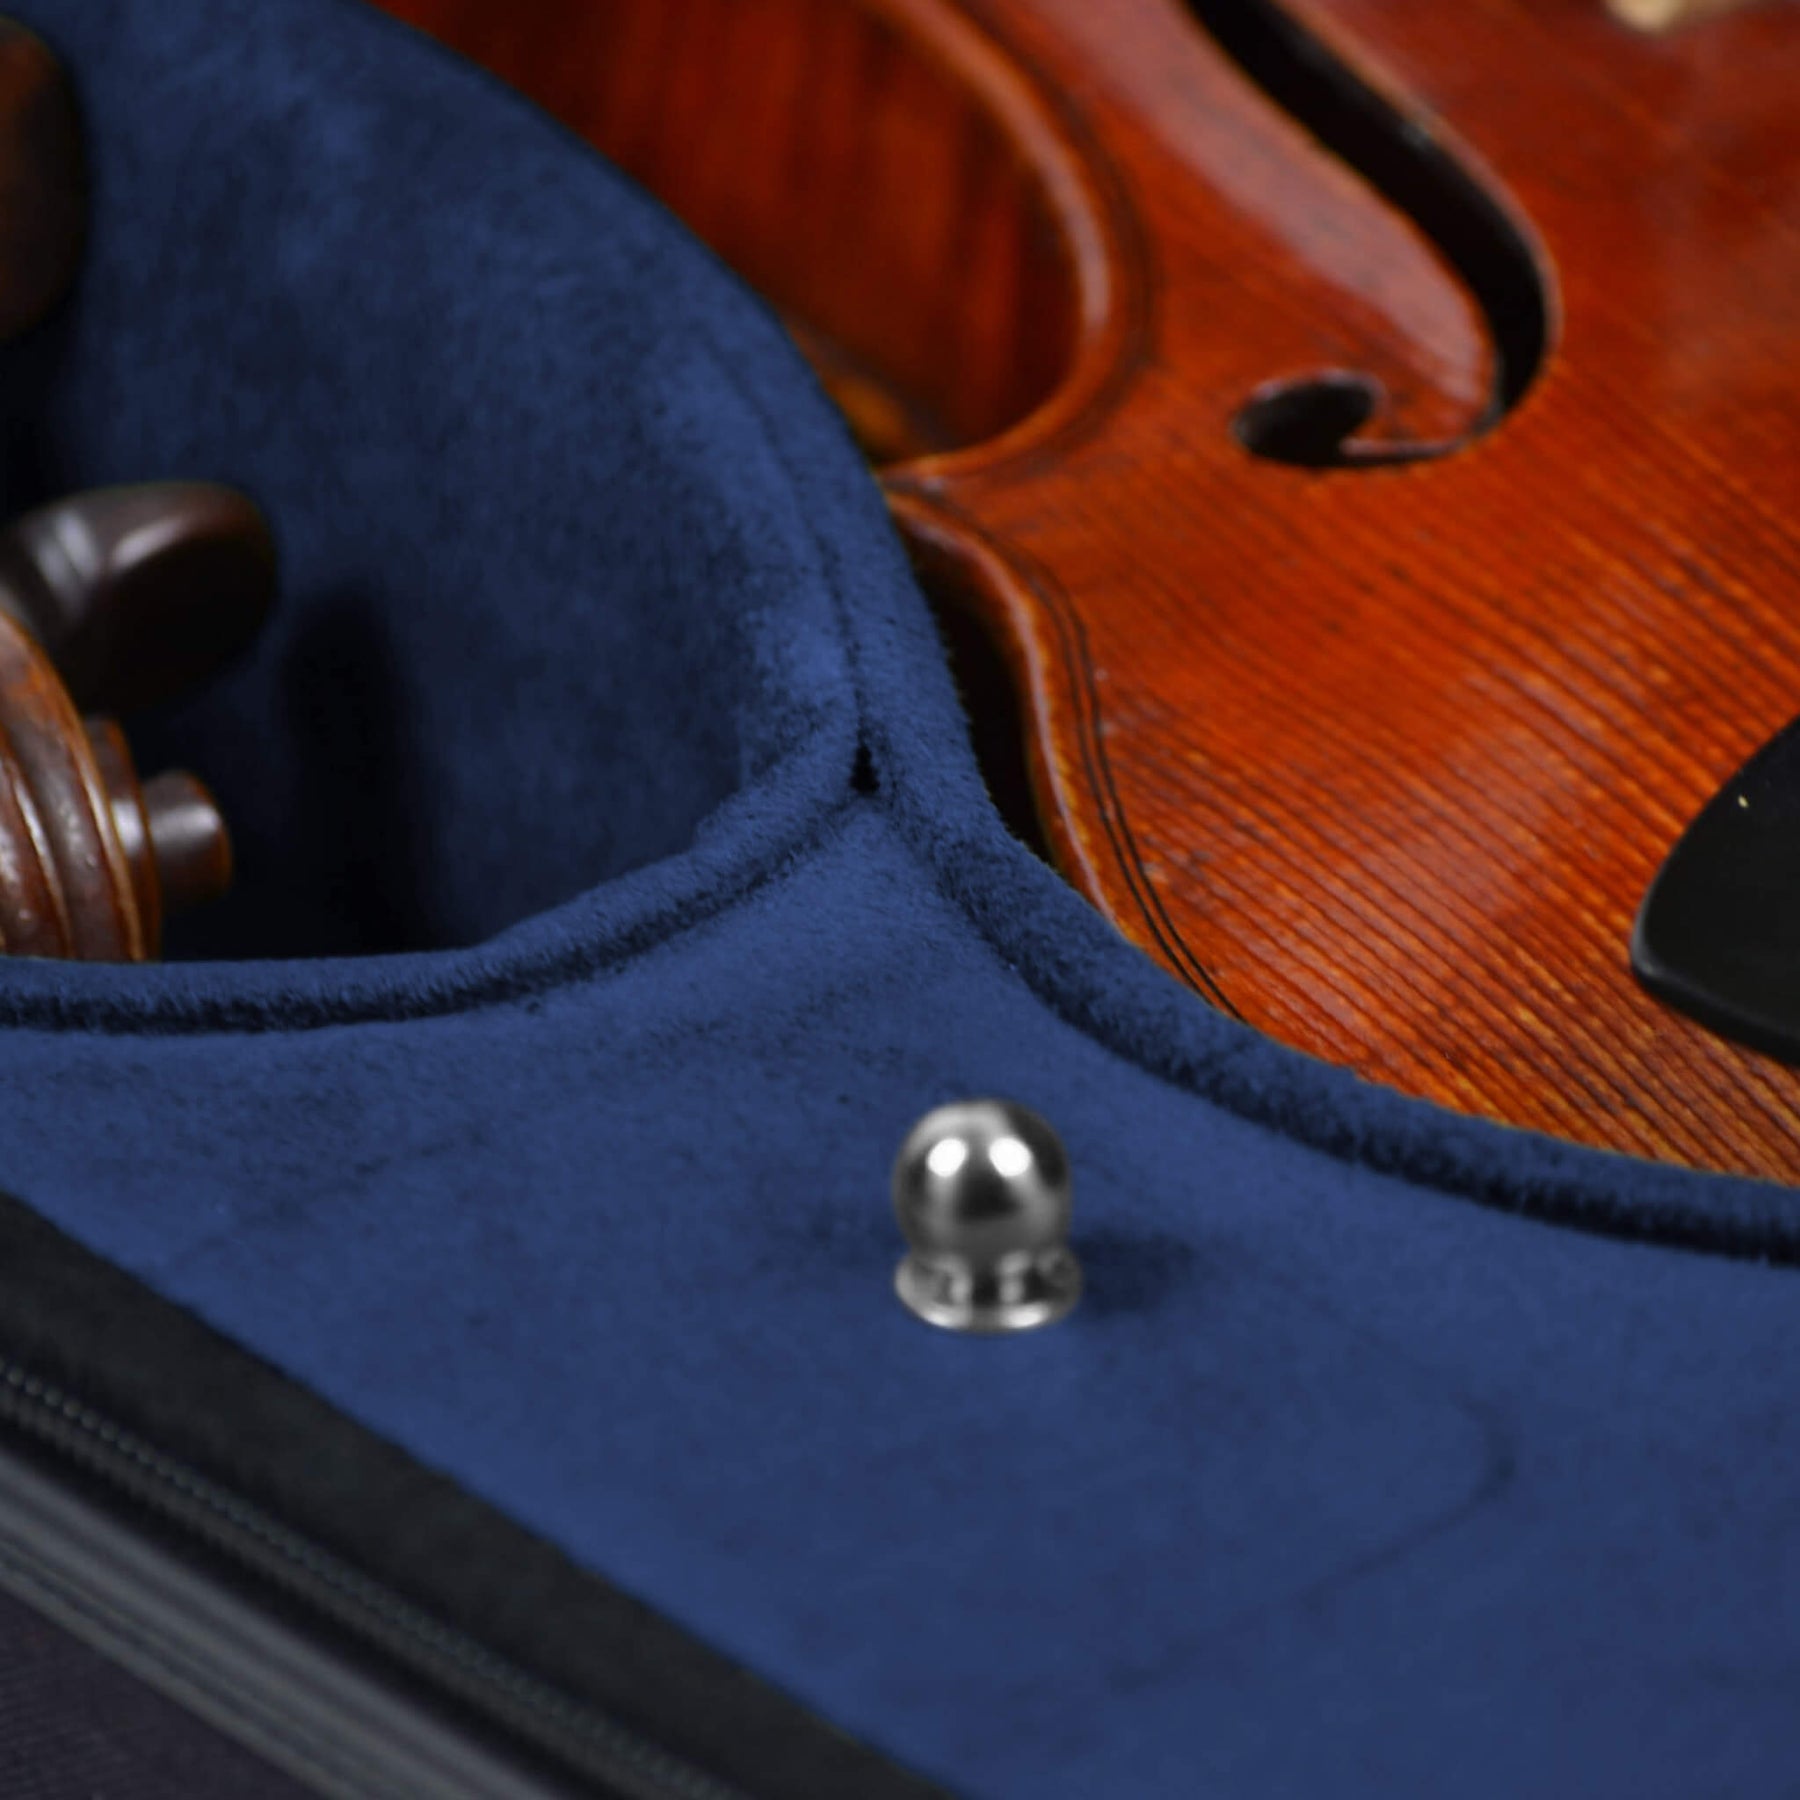 Negri Milano Wooden Double Violin Case